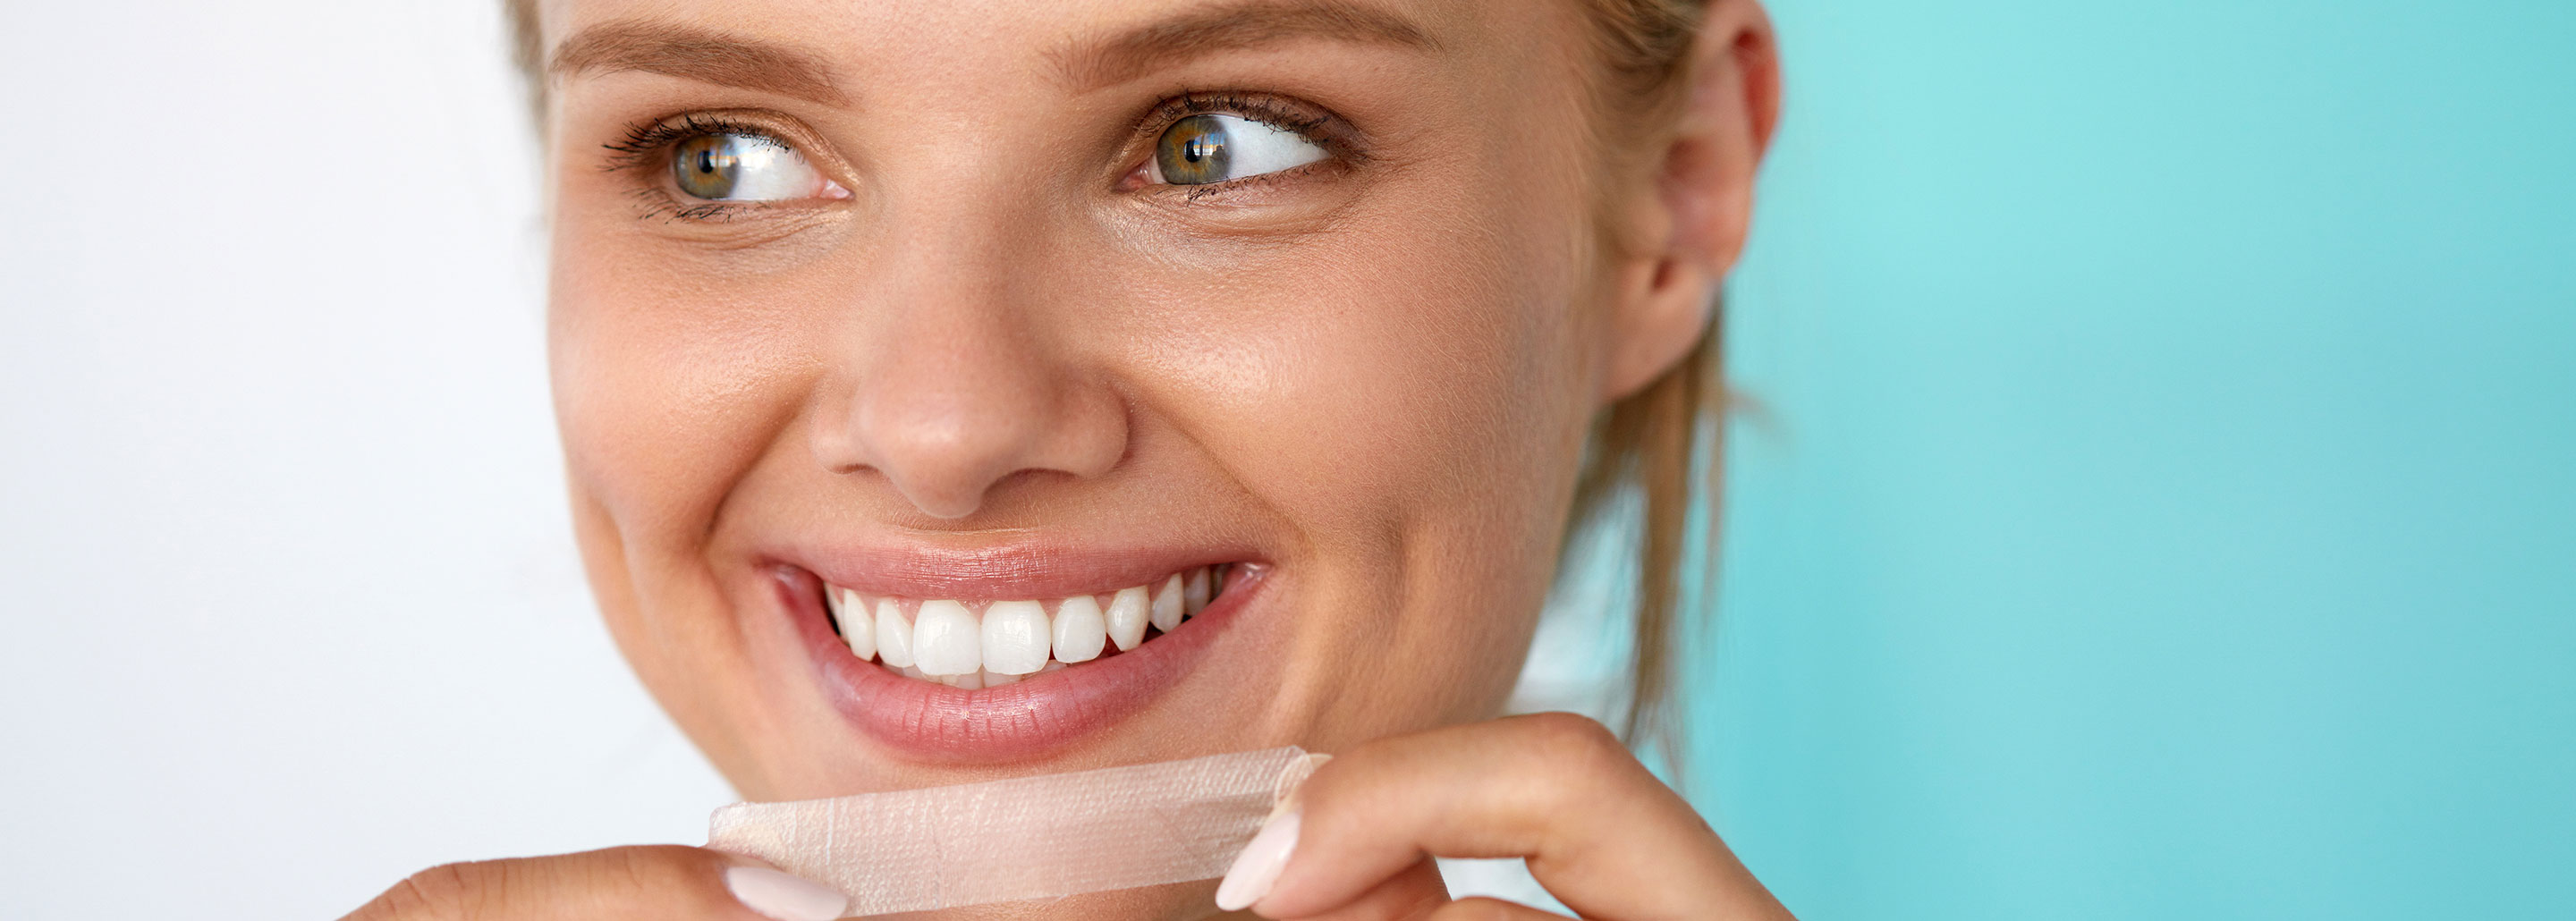 Premium Teeth Whitening Kit